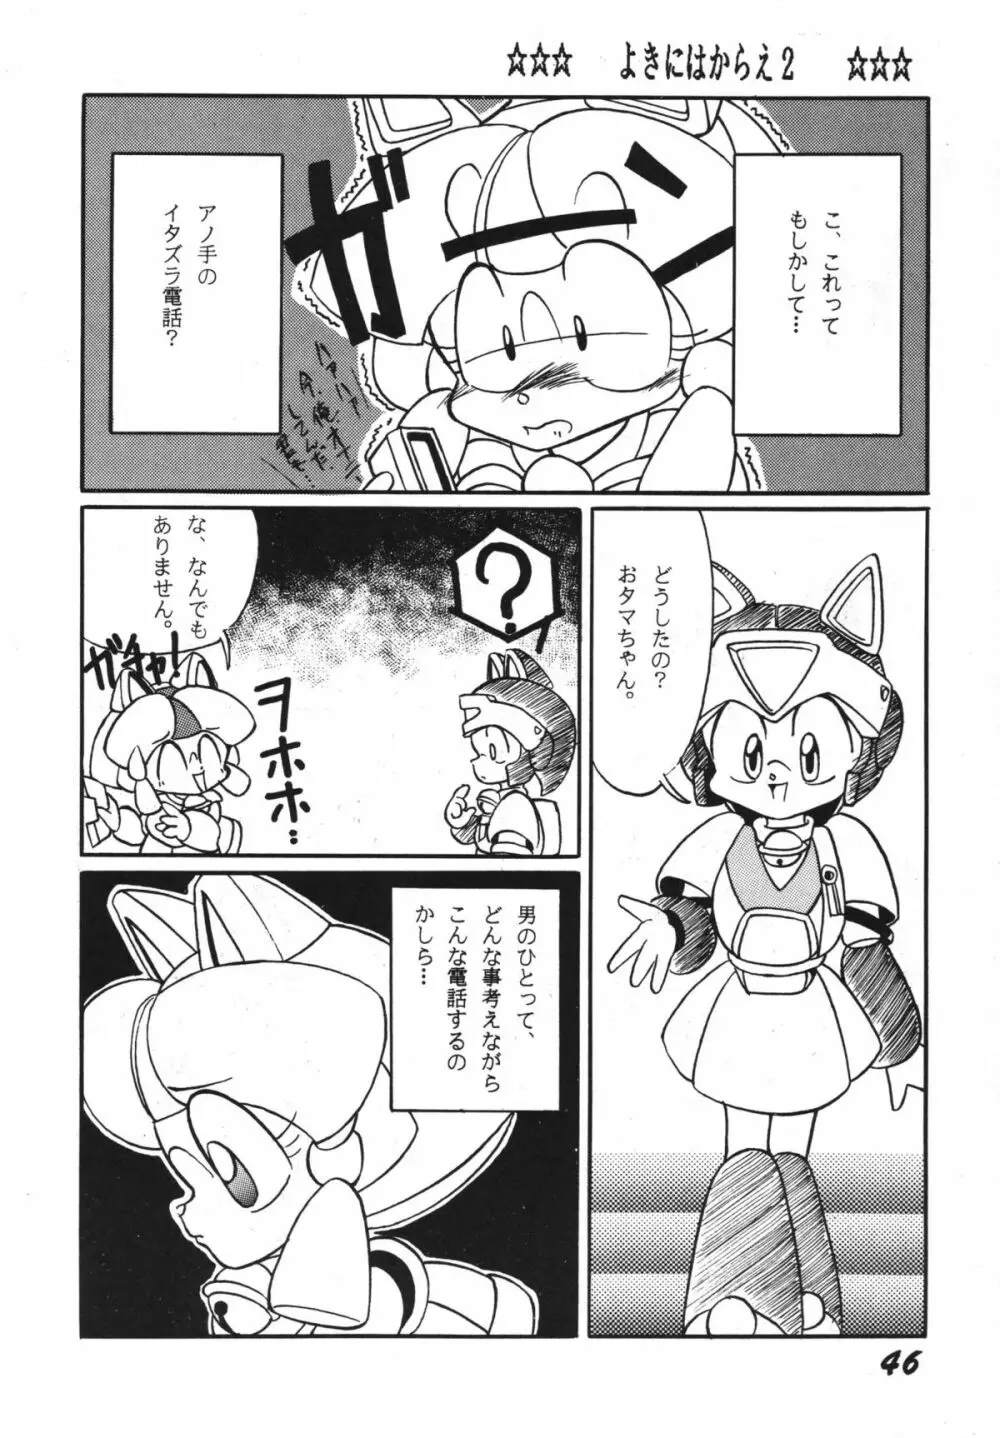 よきにはからえ-弐の巻 - page46